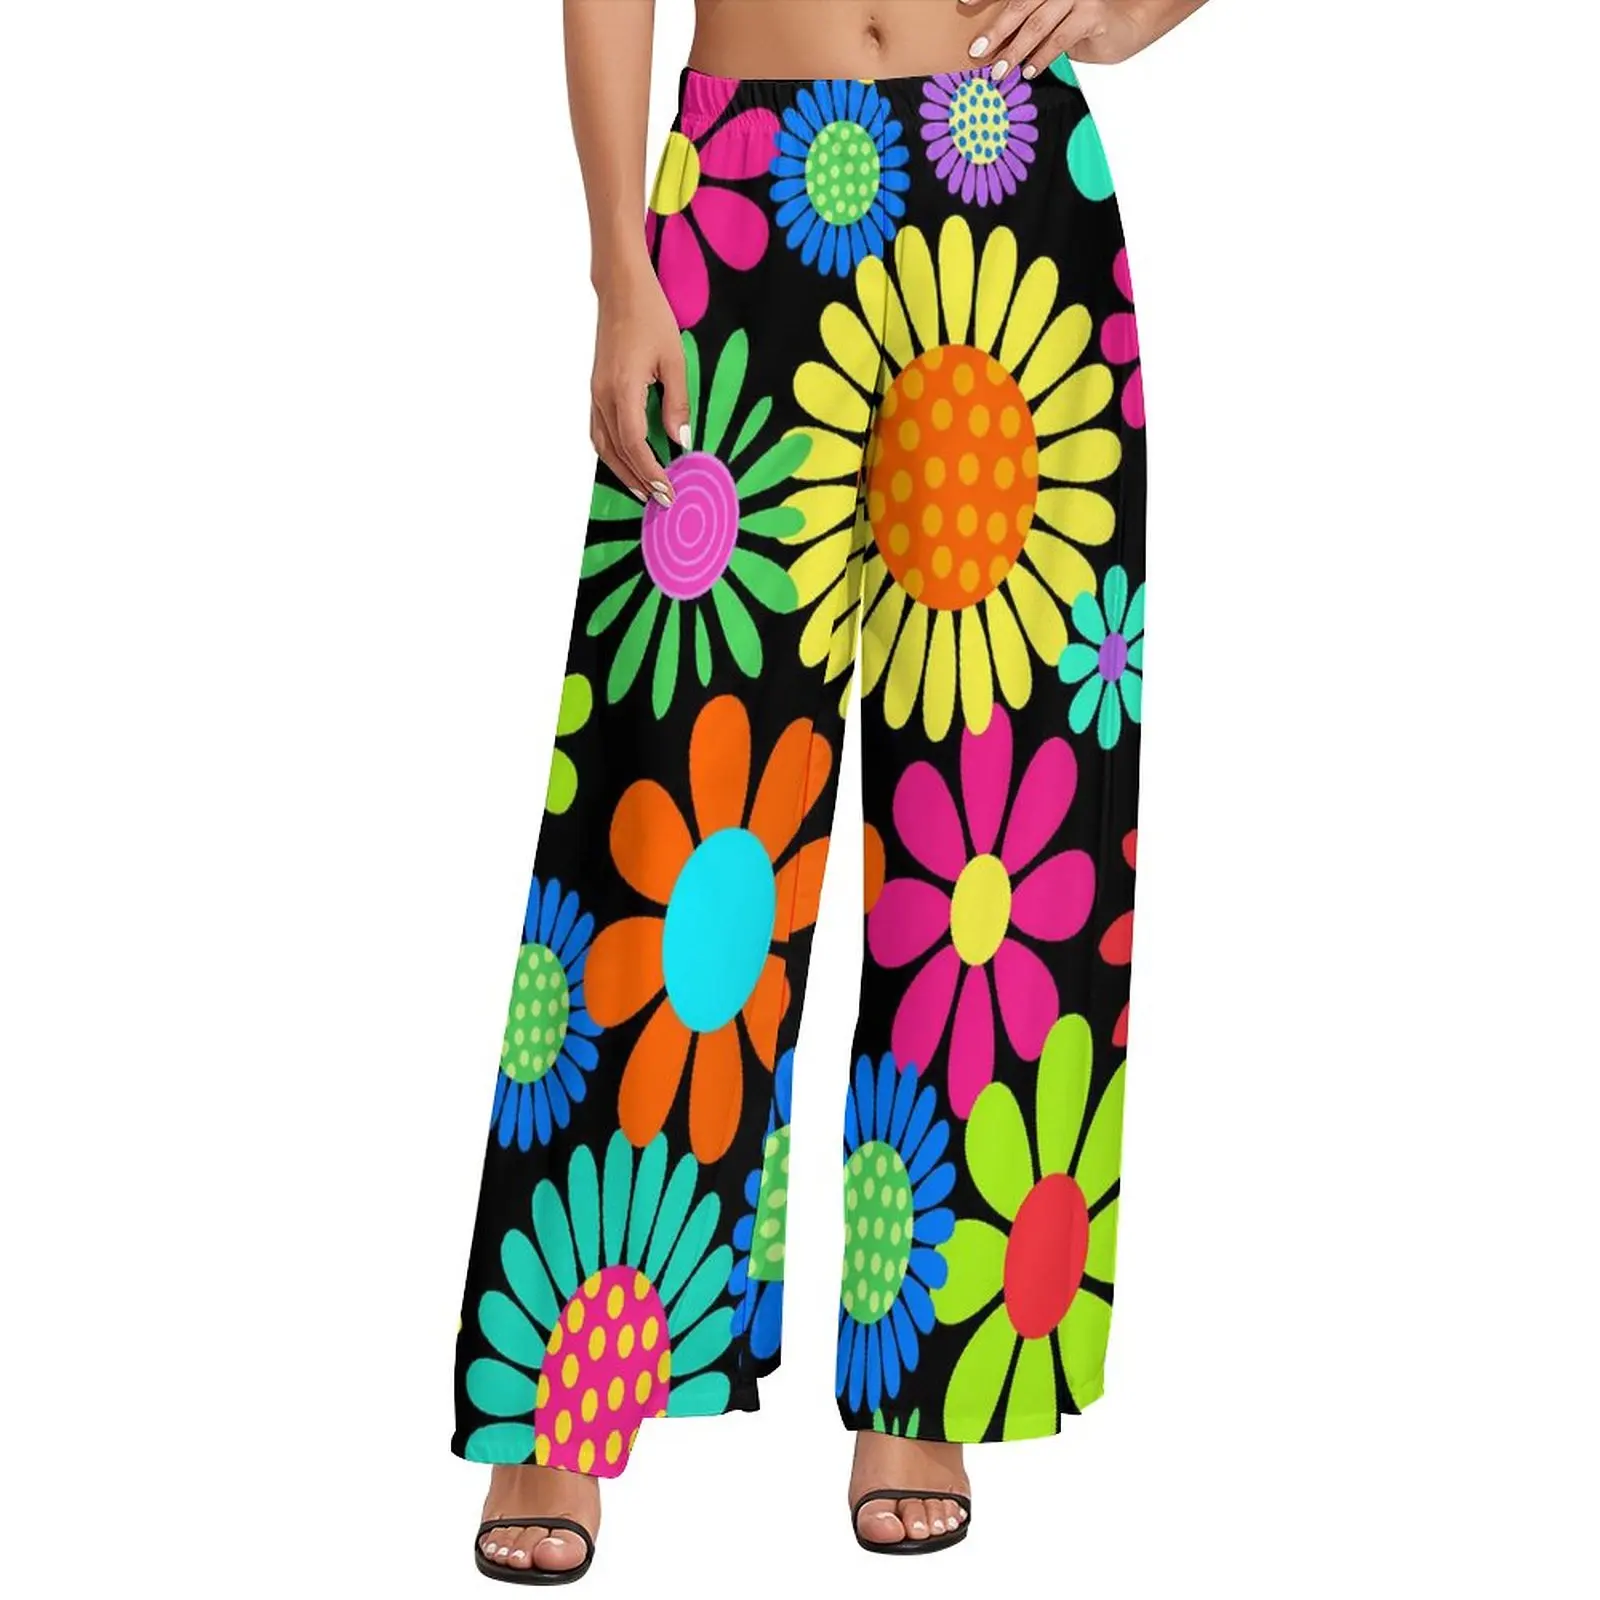 

Прямые брюки Flower Power, разноцветные цветочные повседневные широкие брюки, женские модные корейские брюки большого размера с графическим принтом